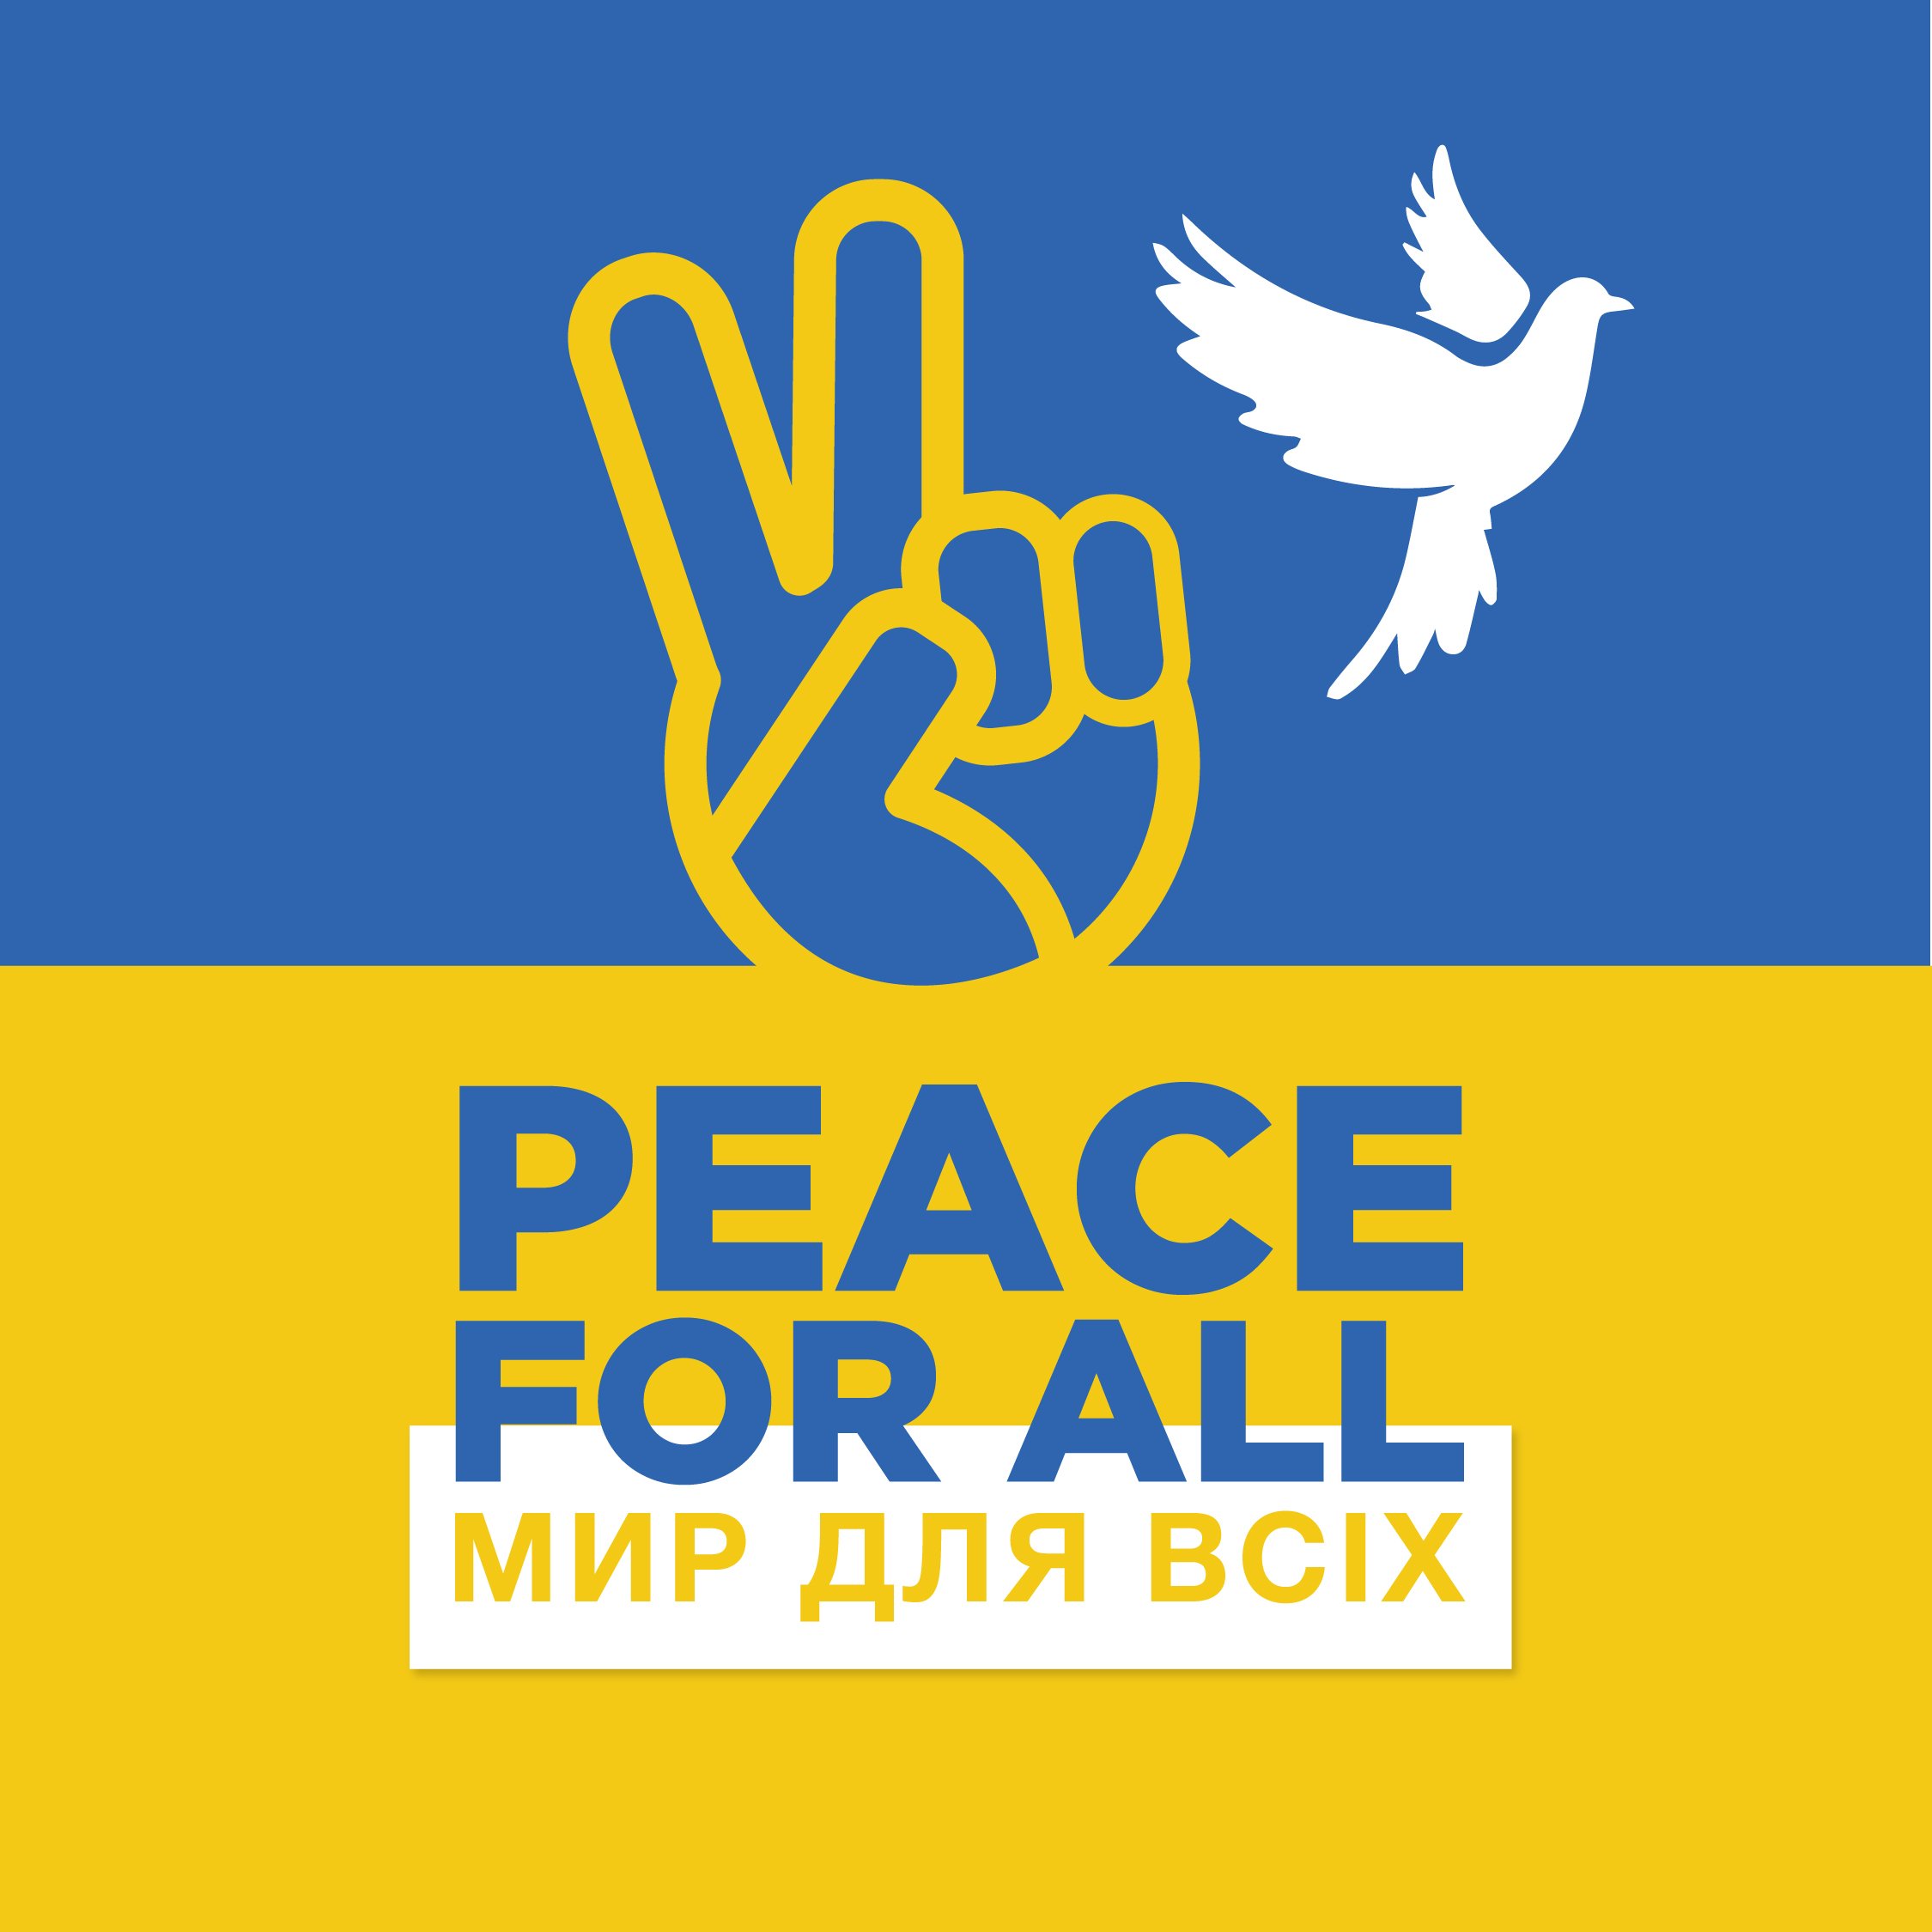 Peace for ALL Social Art-02.jpg